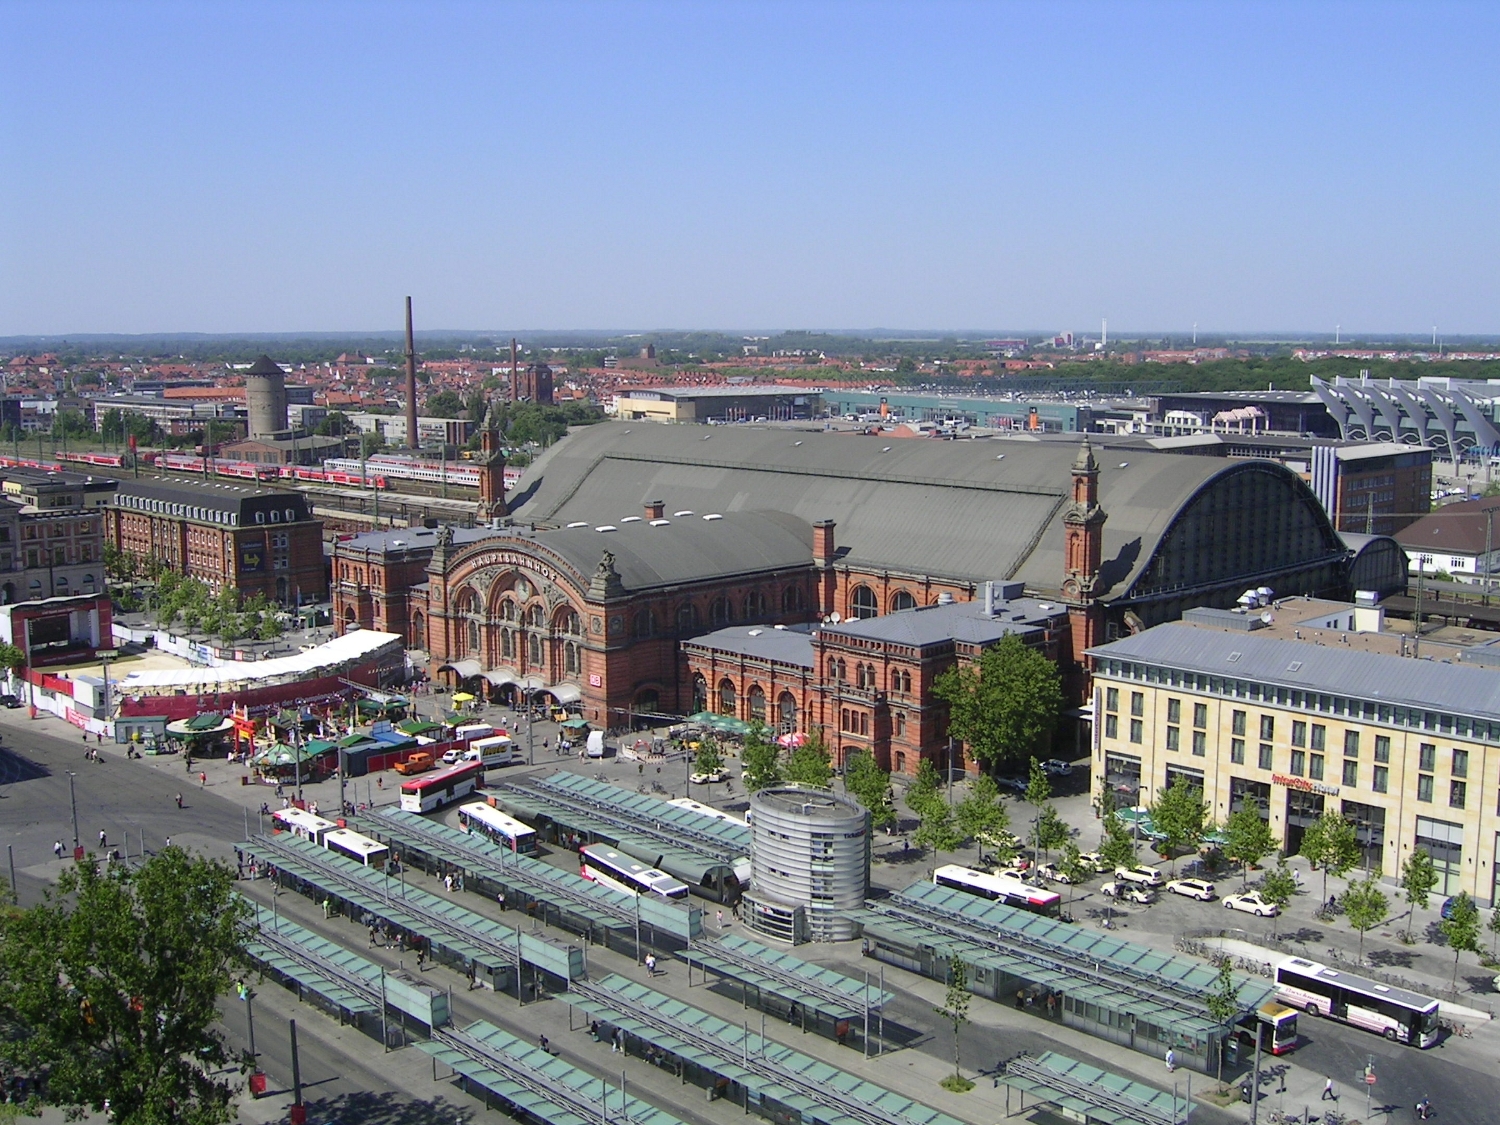 http://www.net4info.de/photos/cpg/albums/userpics/10002/Bremen_Hauptbahnhof.JPG